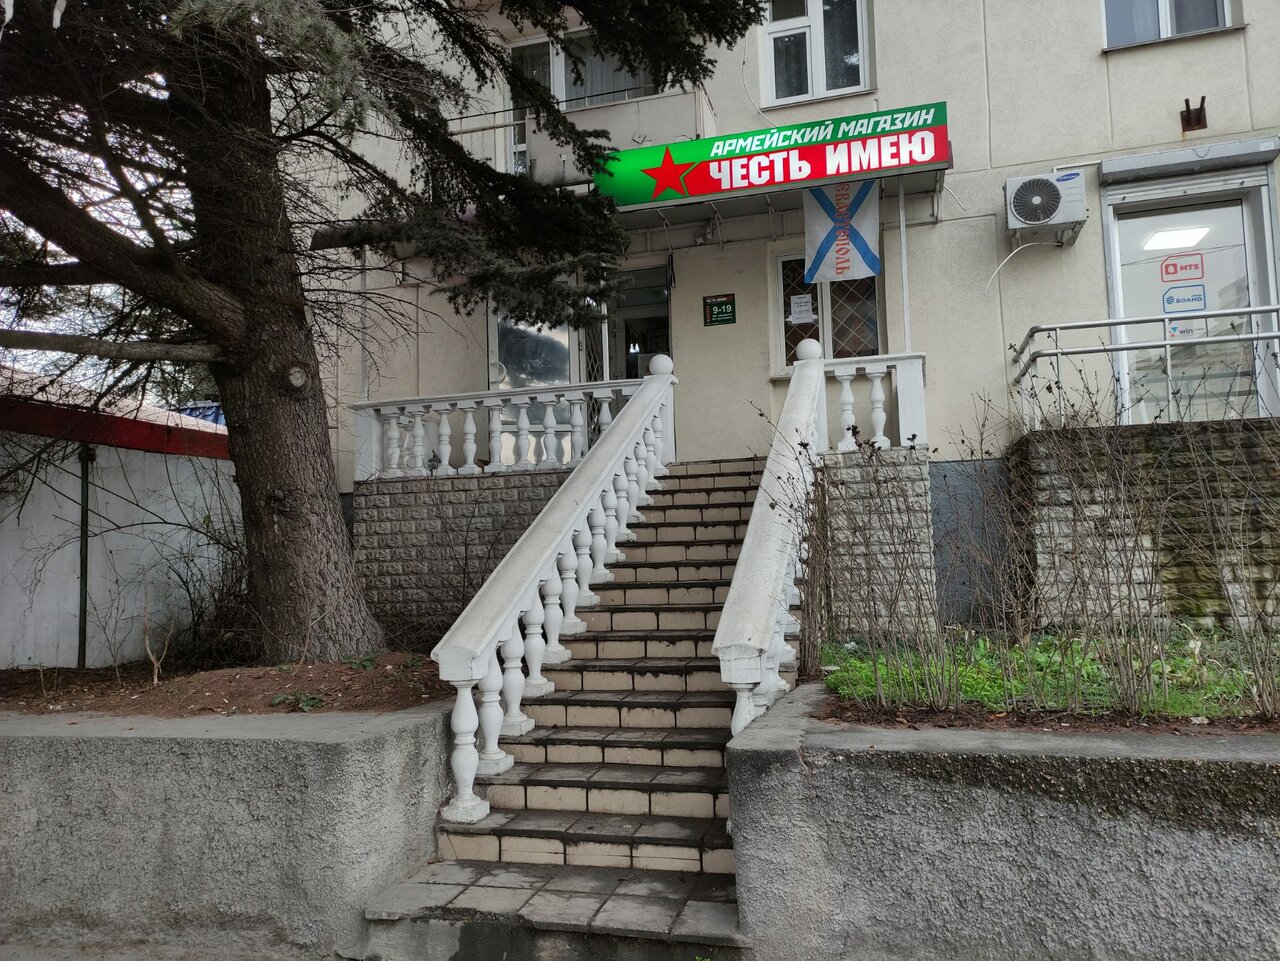 Вход в армейский магазин "Честь Имею" в Севастополе